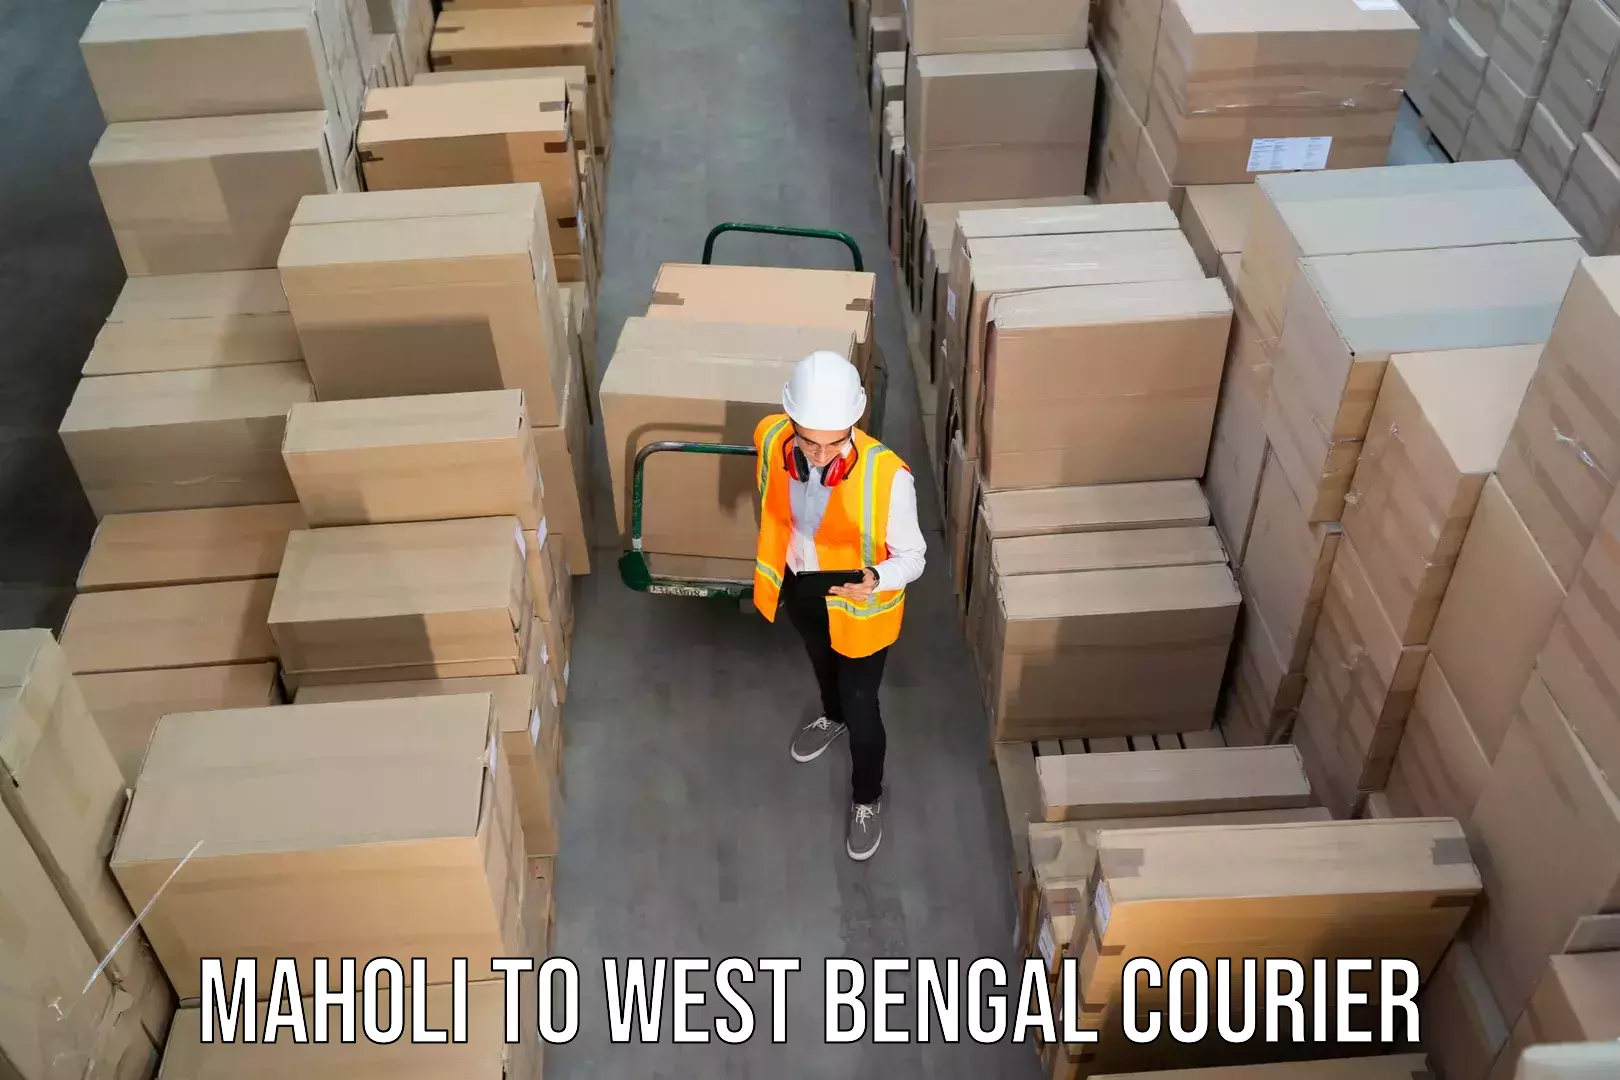 International courier networks Maholi to Kolkata Port